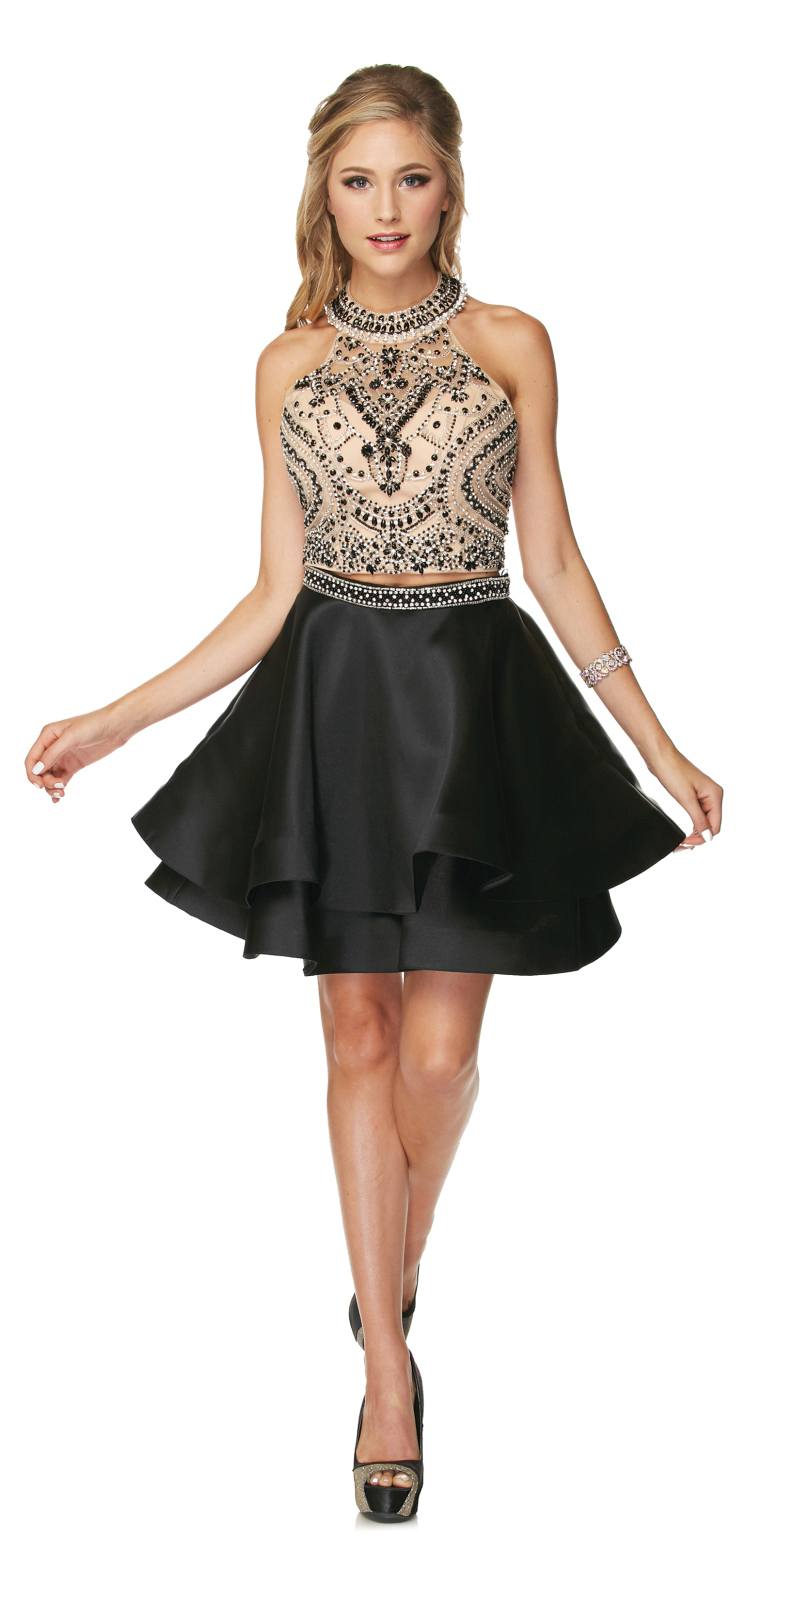 Two-Piece Short Prom Dress Halter Embellished Bodice Black